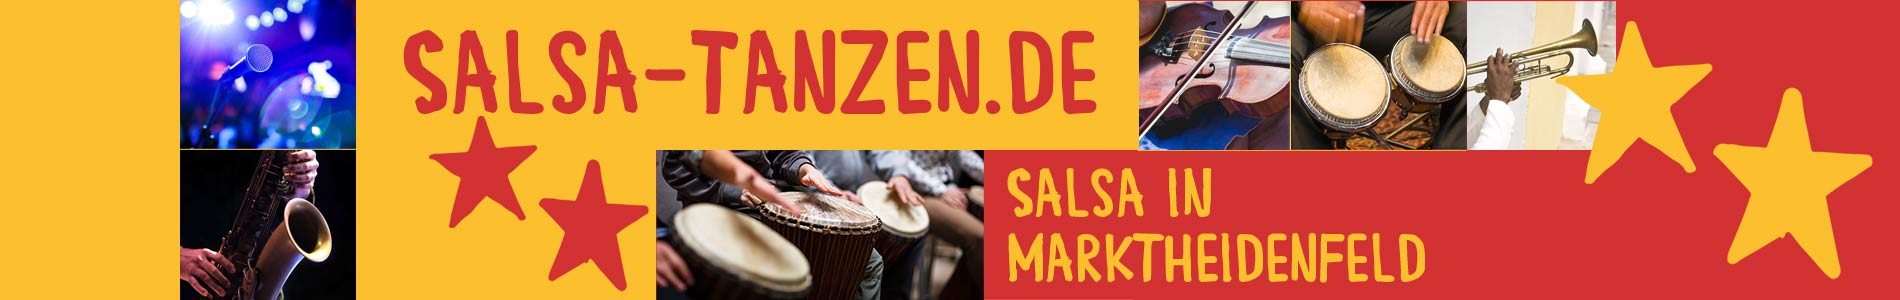 Salsa in Marktheidenfeld – Salsa lernen und tanzen, Tanzkurse, Partys, Veranstaltungen